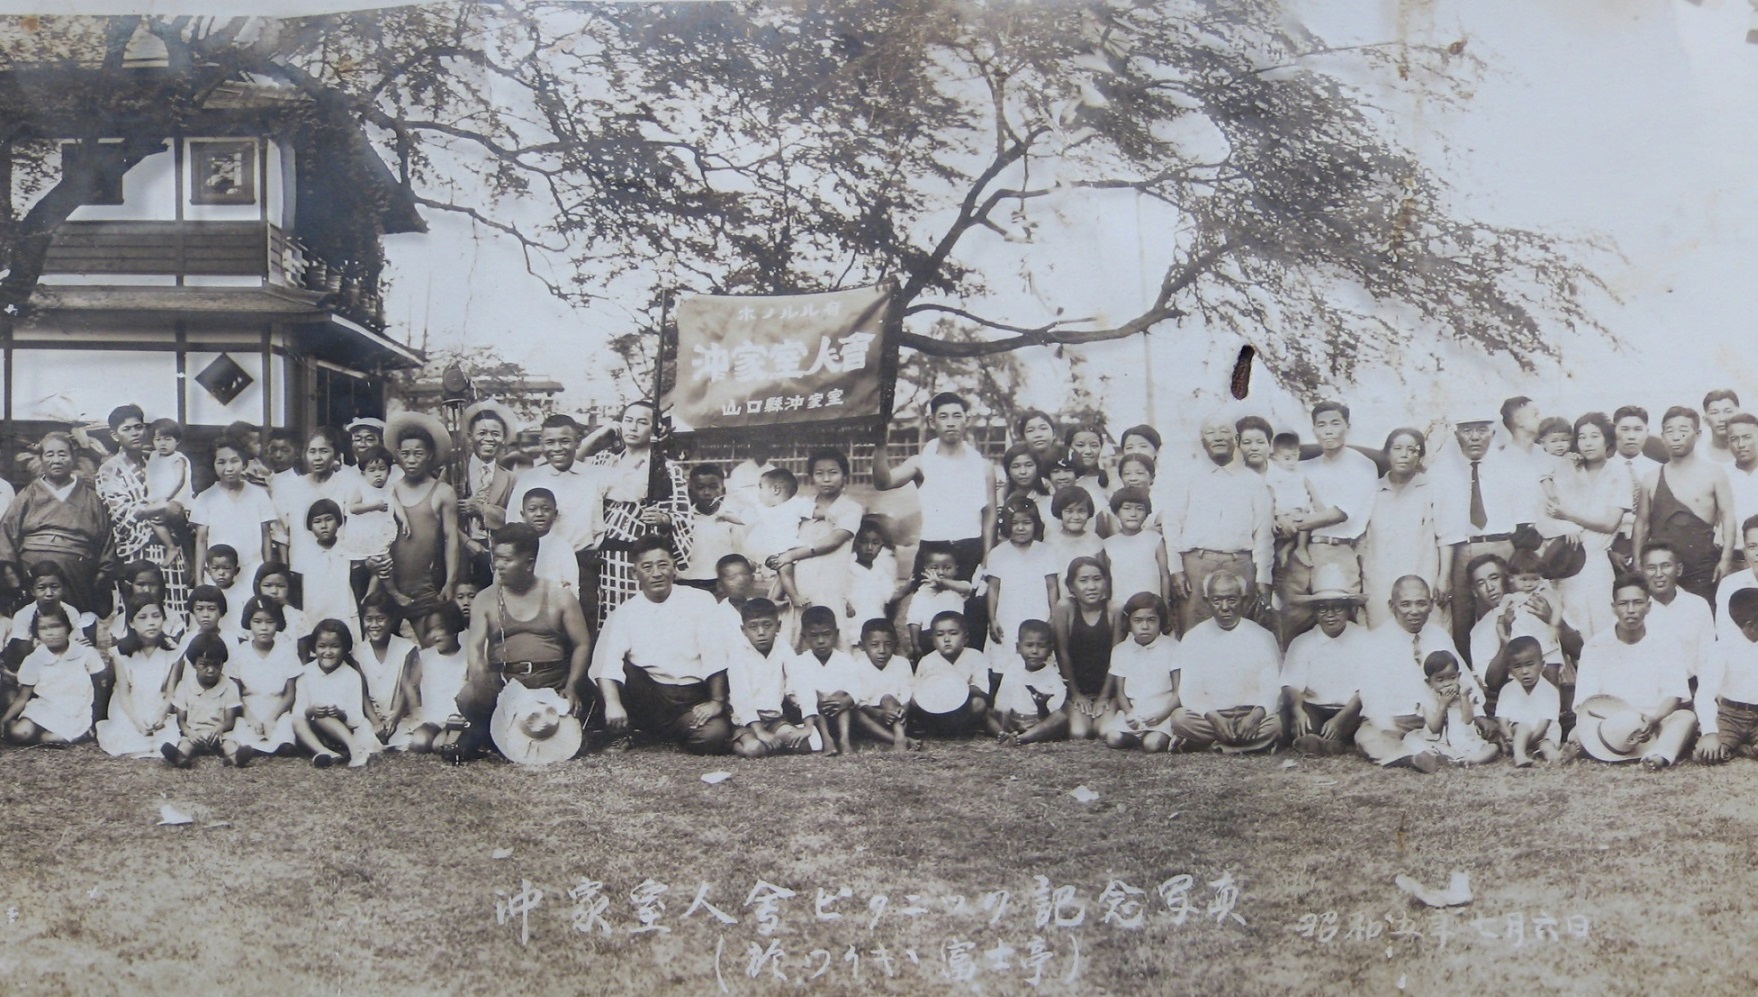 Hawaii Okikamurojinkai Waikiki picnic 1930